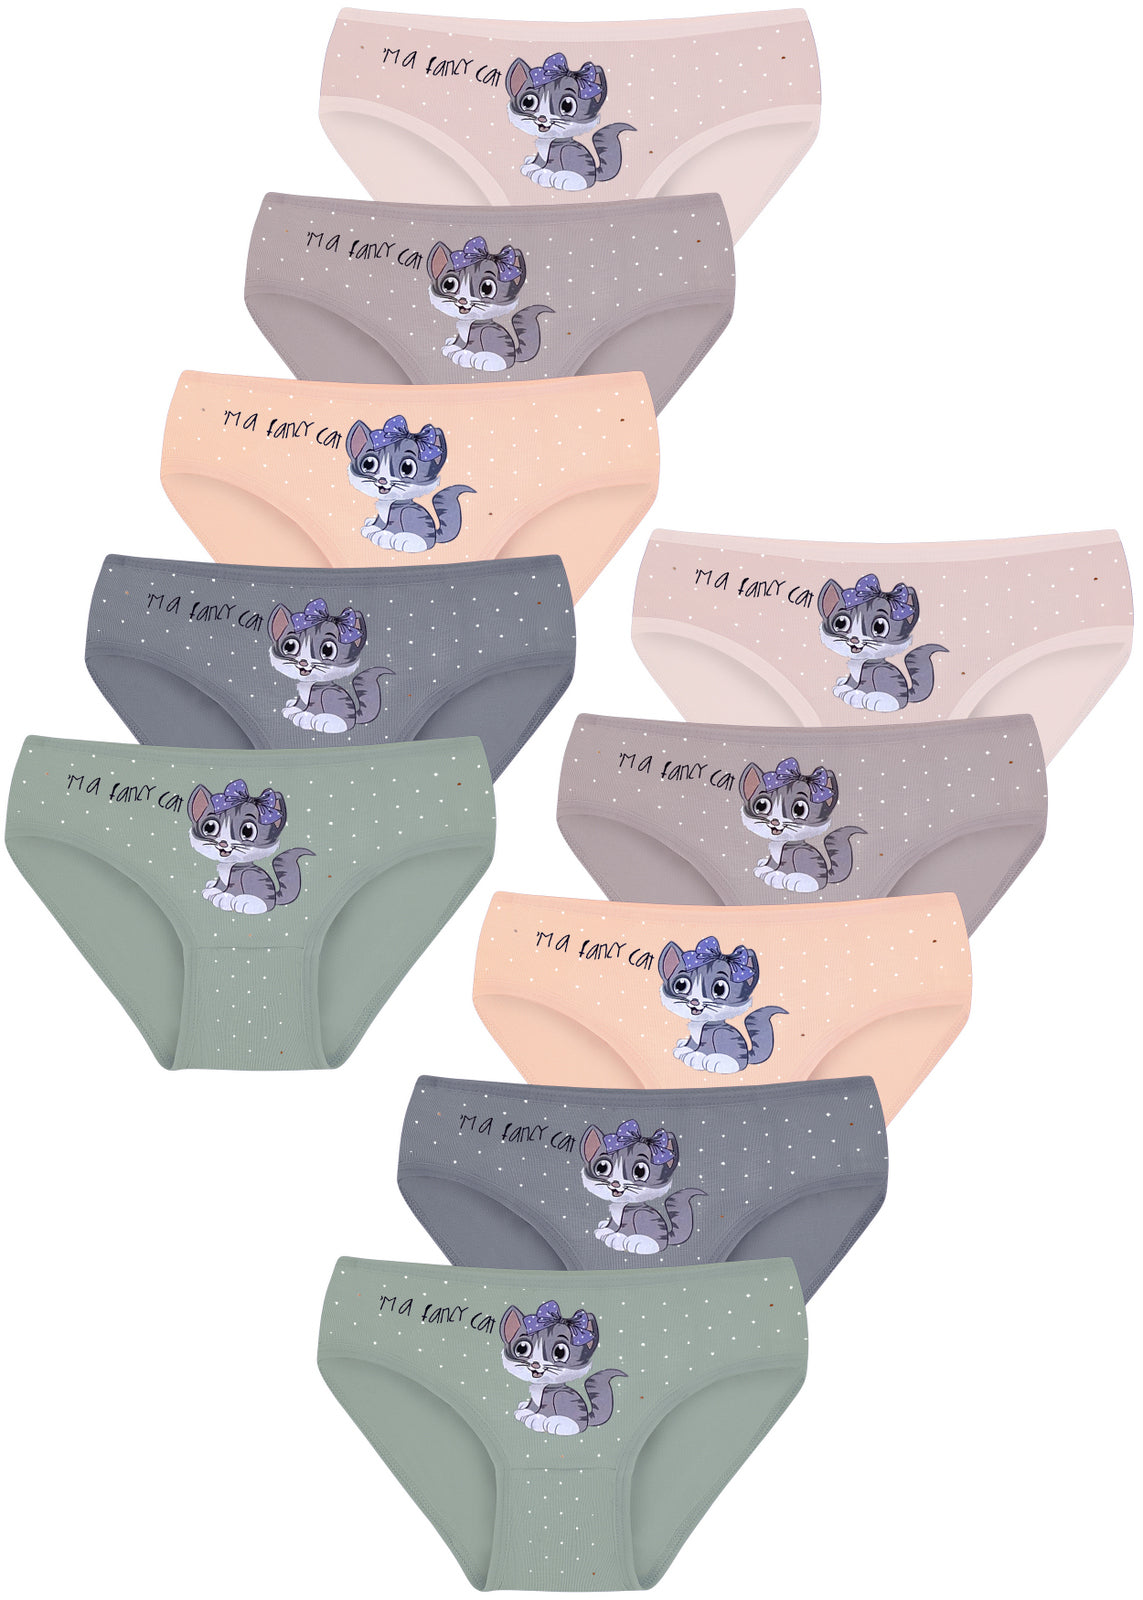 10 Mädchen Kinder Slips Katze Baumwolle Unterhosen Unterwäsche 92-146